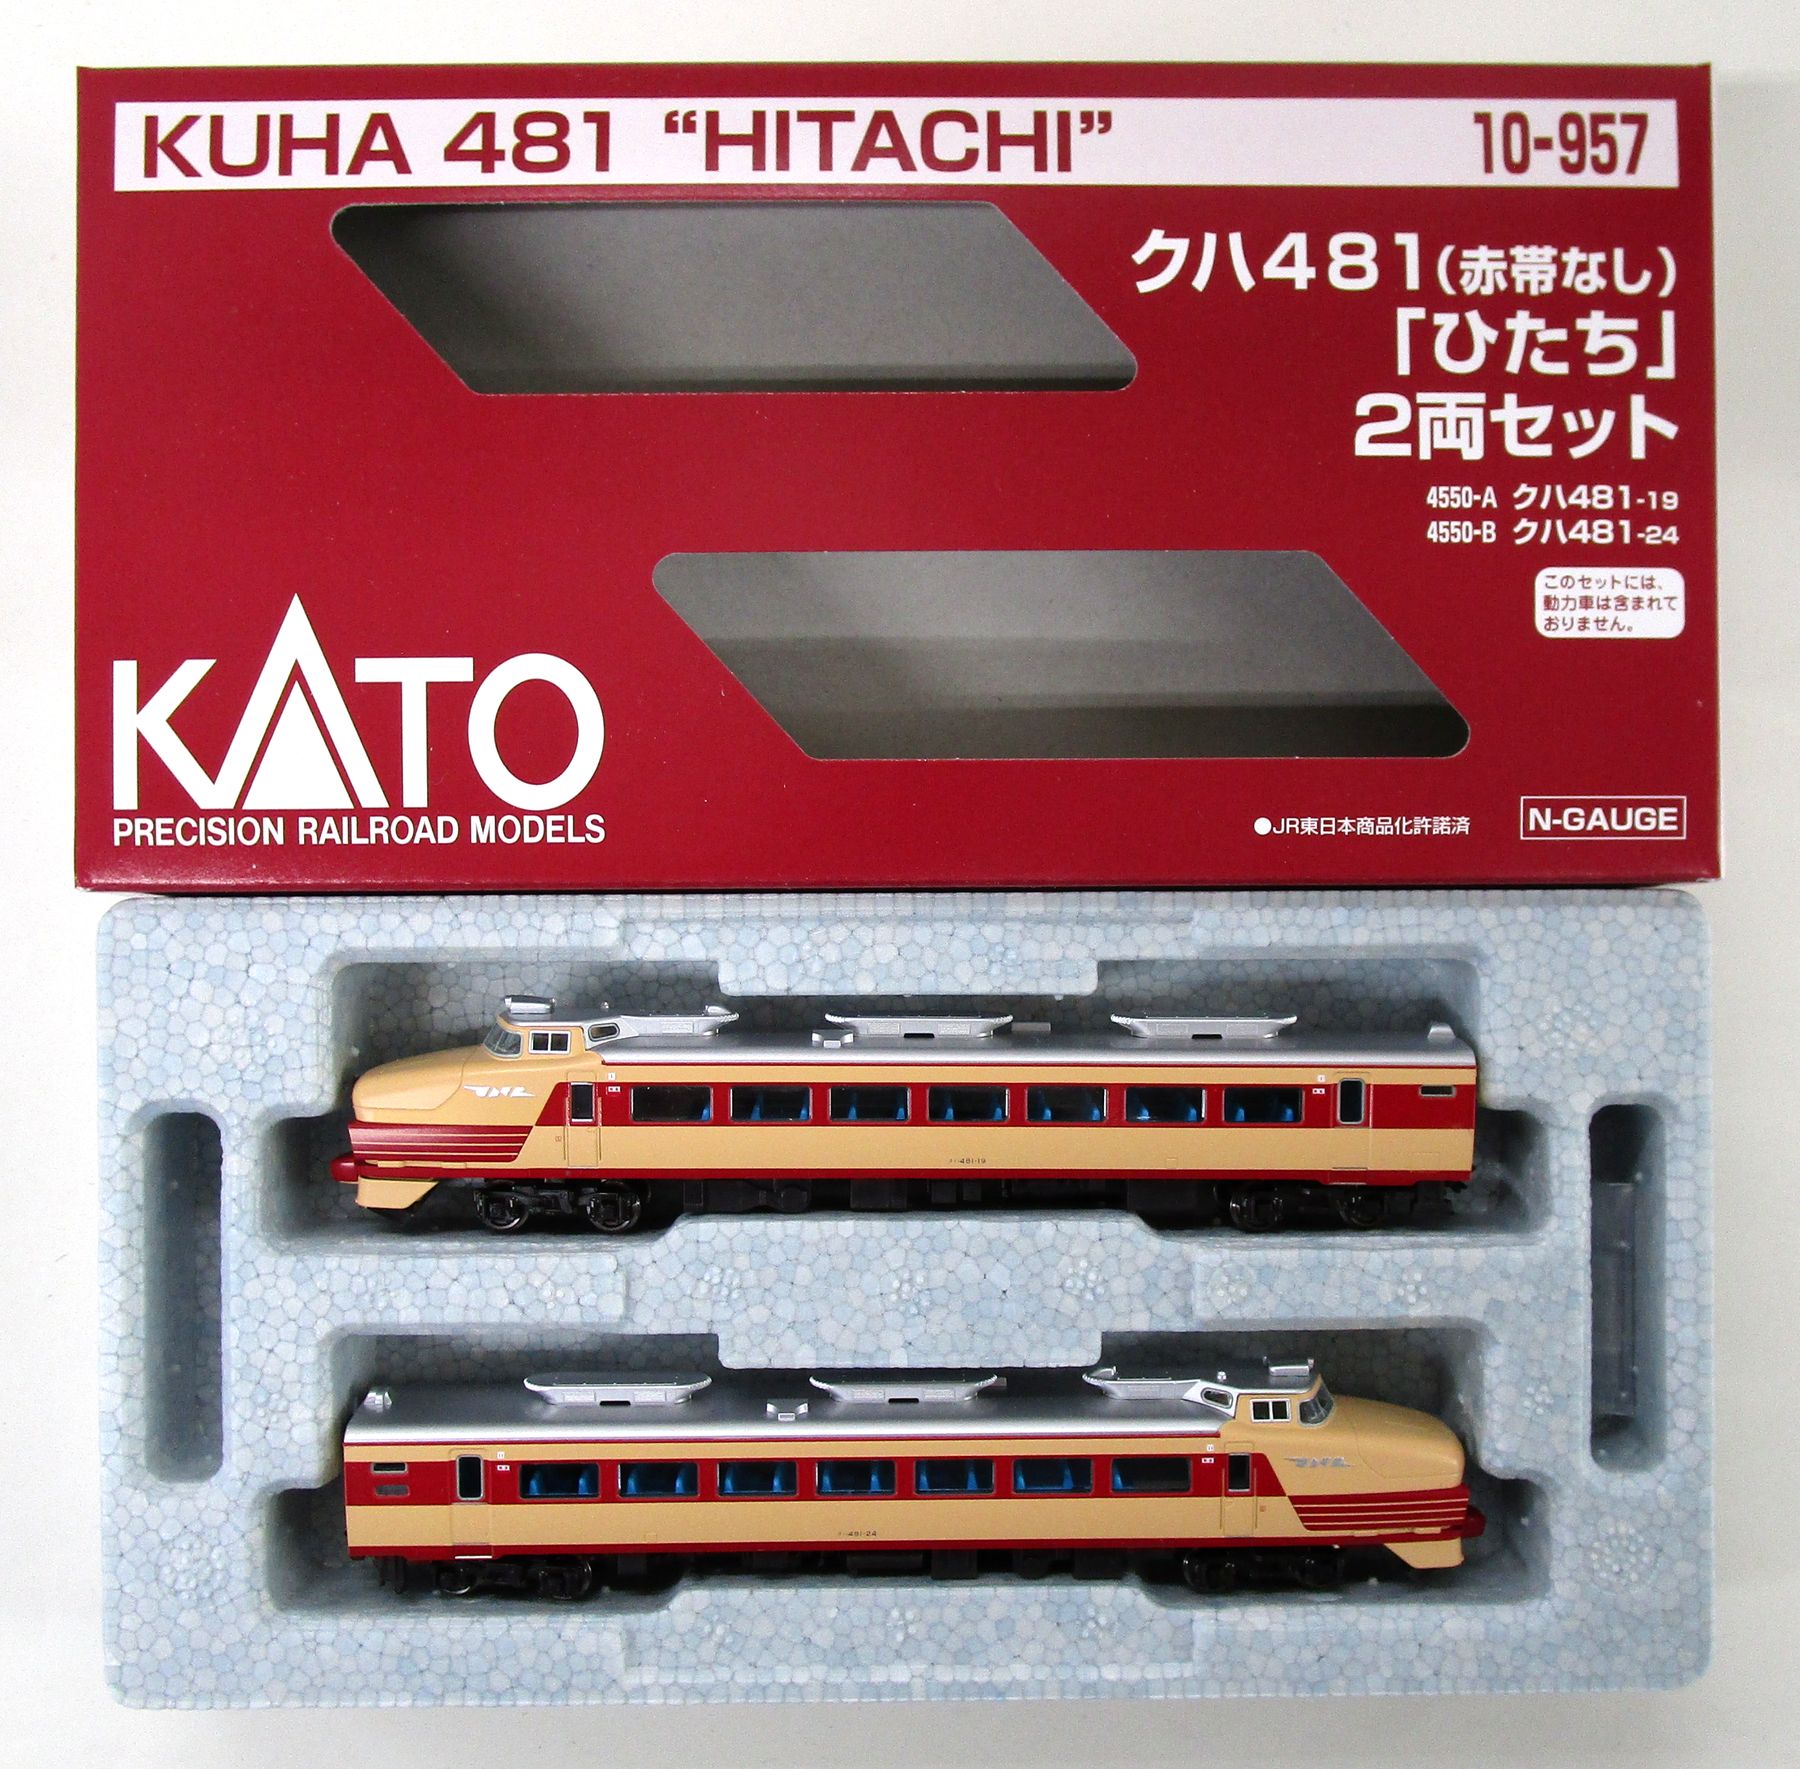 公式]鉄道模型(10-957クハ481(赤帯なし)先頭車「ひたち」タイプ 2両 